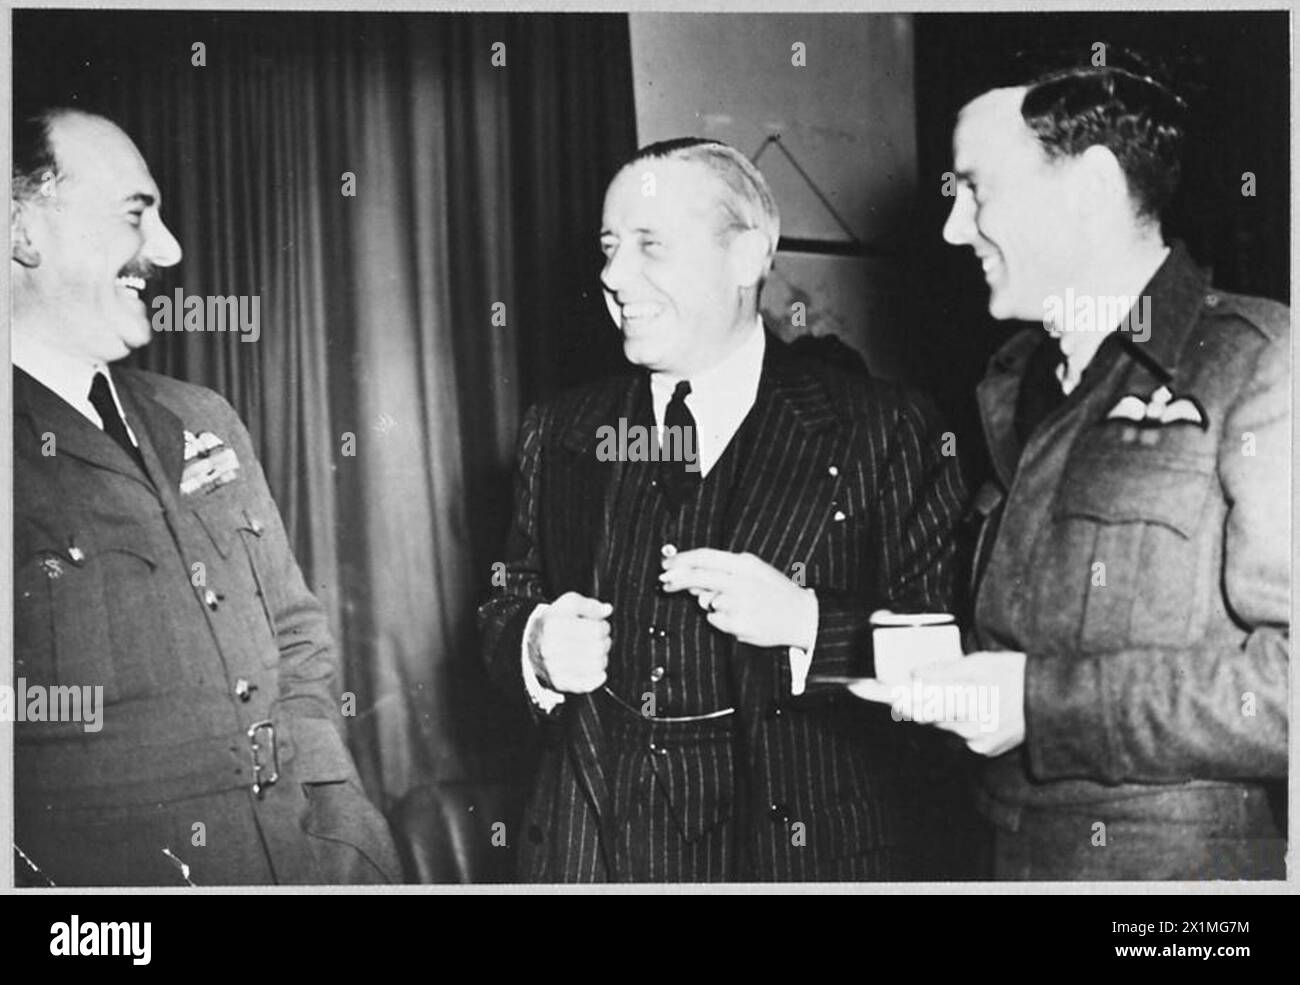 DEUX BALDWIN SE RENCONTRENT - le vice-maréchal de l'air J.E.A. Baldwin, CB., DSO., OBE., qui commande l'un des groupes de bombardiers de R.A.F. a rencontré le membre du Congrès Hon.Joseph Clark-Baldwin de New York pendant la visite. Au cours de la conversation, il a été constaté que le vice-maréchal de l'Air et le membre du Congrès étaient membres de différentes branches de la même famille, la Royal Air Force Banque D'Images